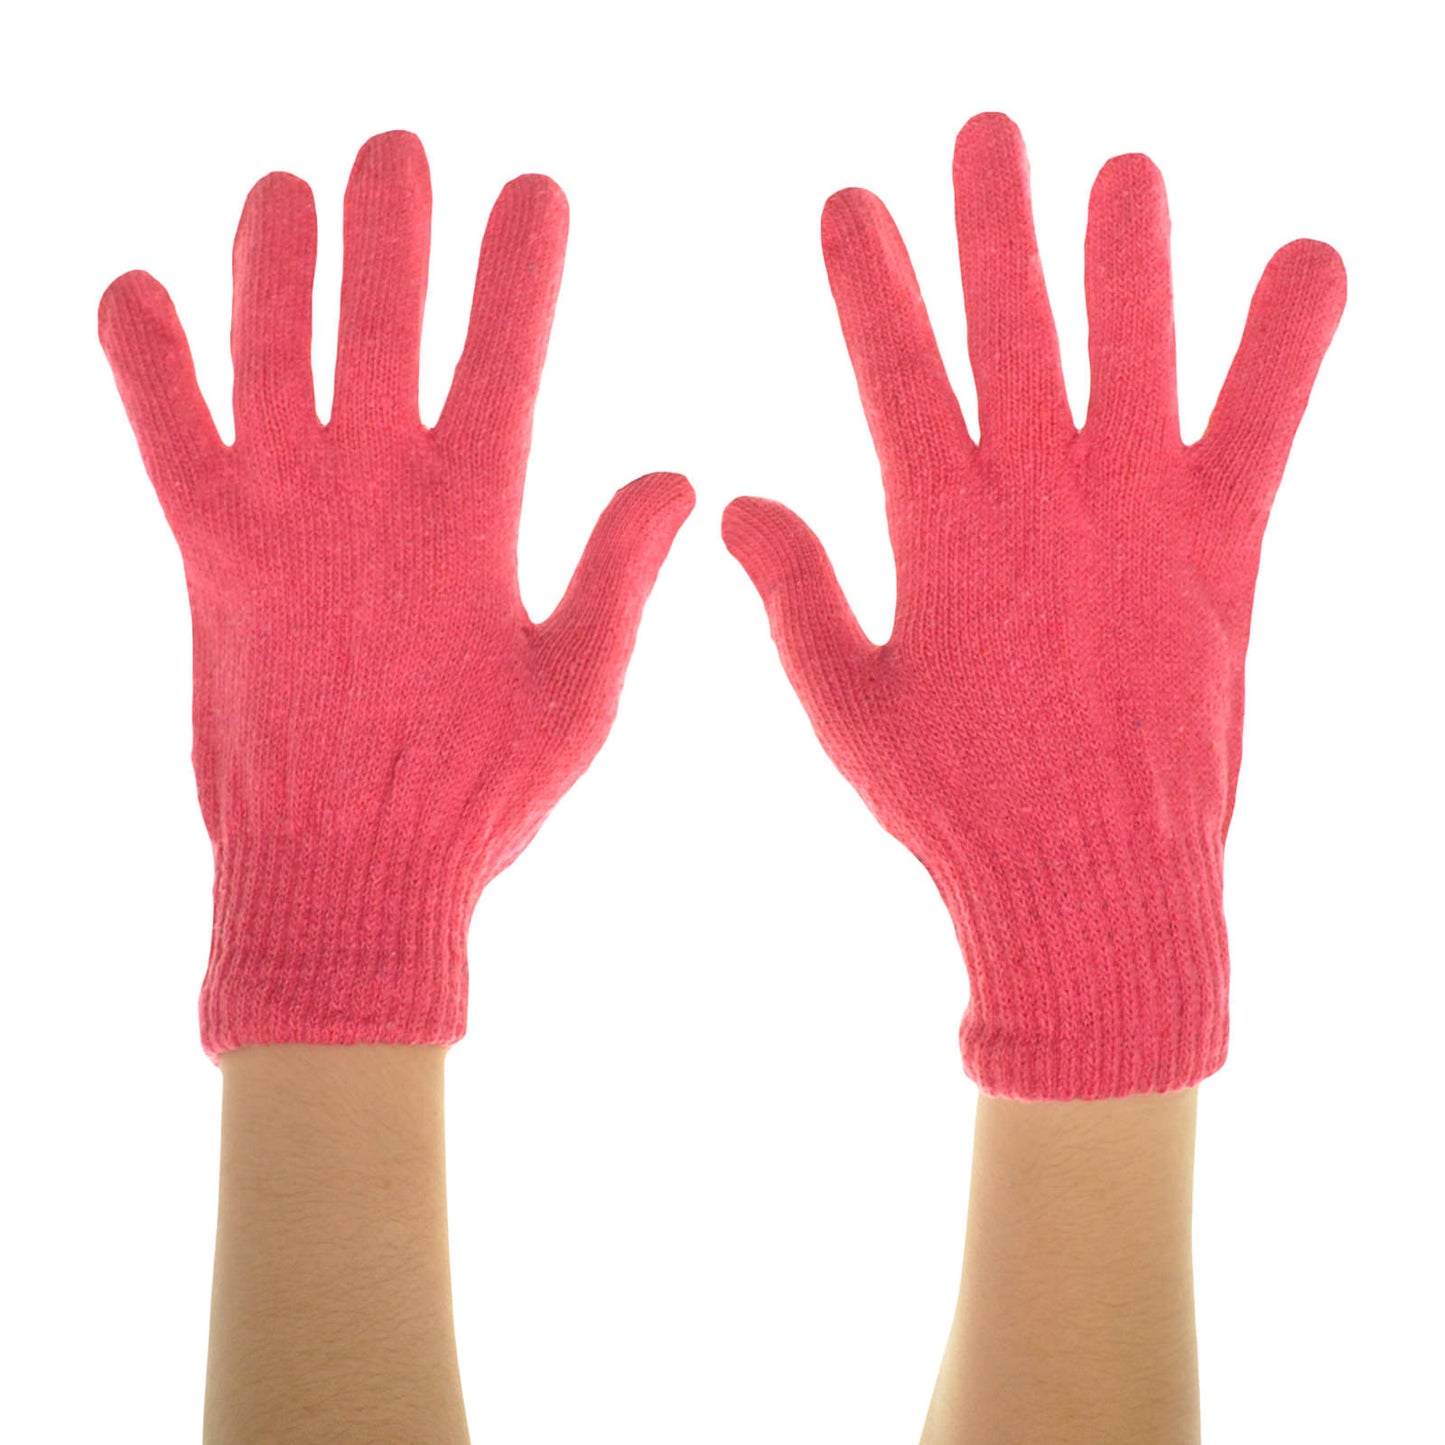 Swan Ladies Knitted Gloves (12-Pack), #WG1166